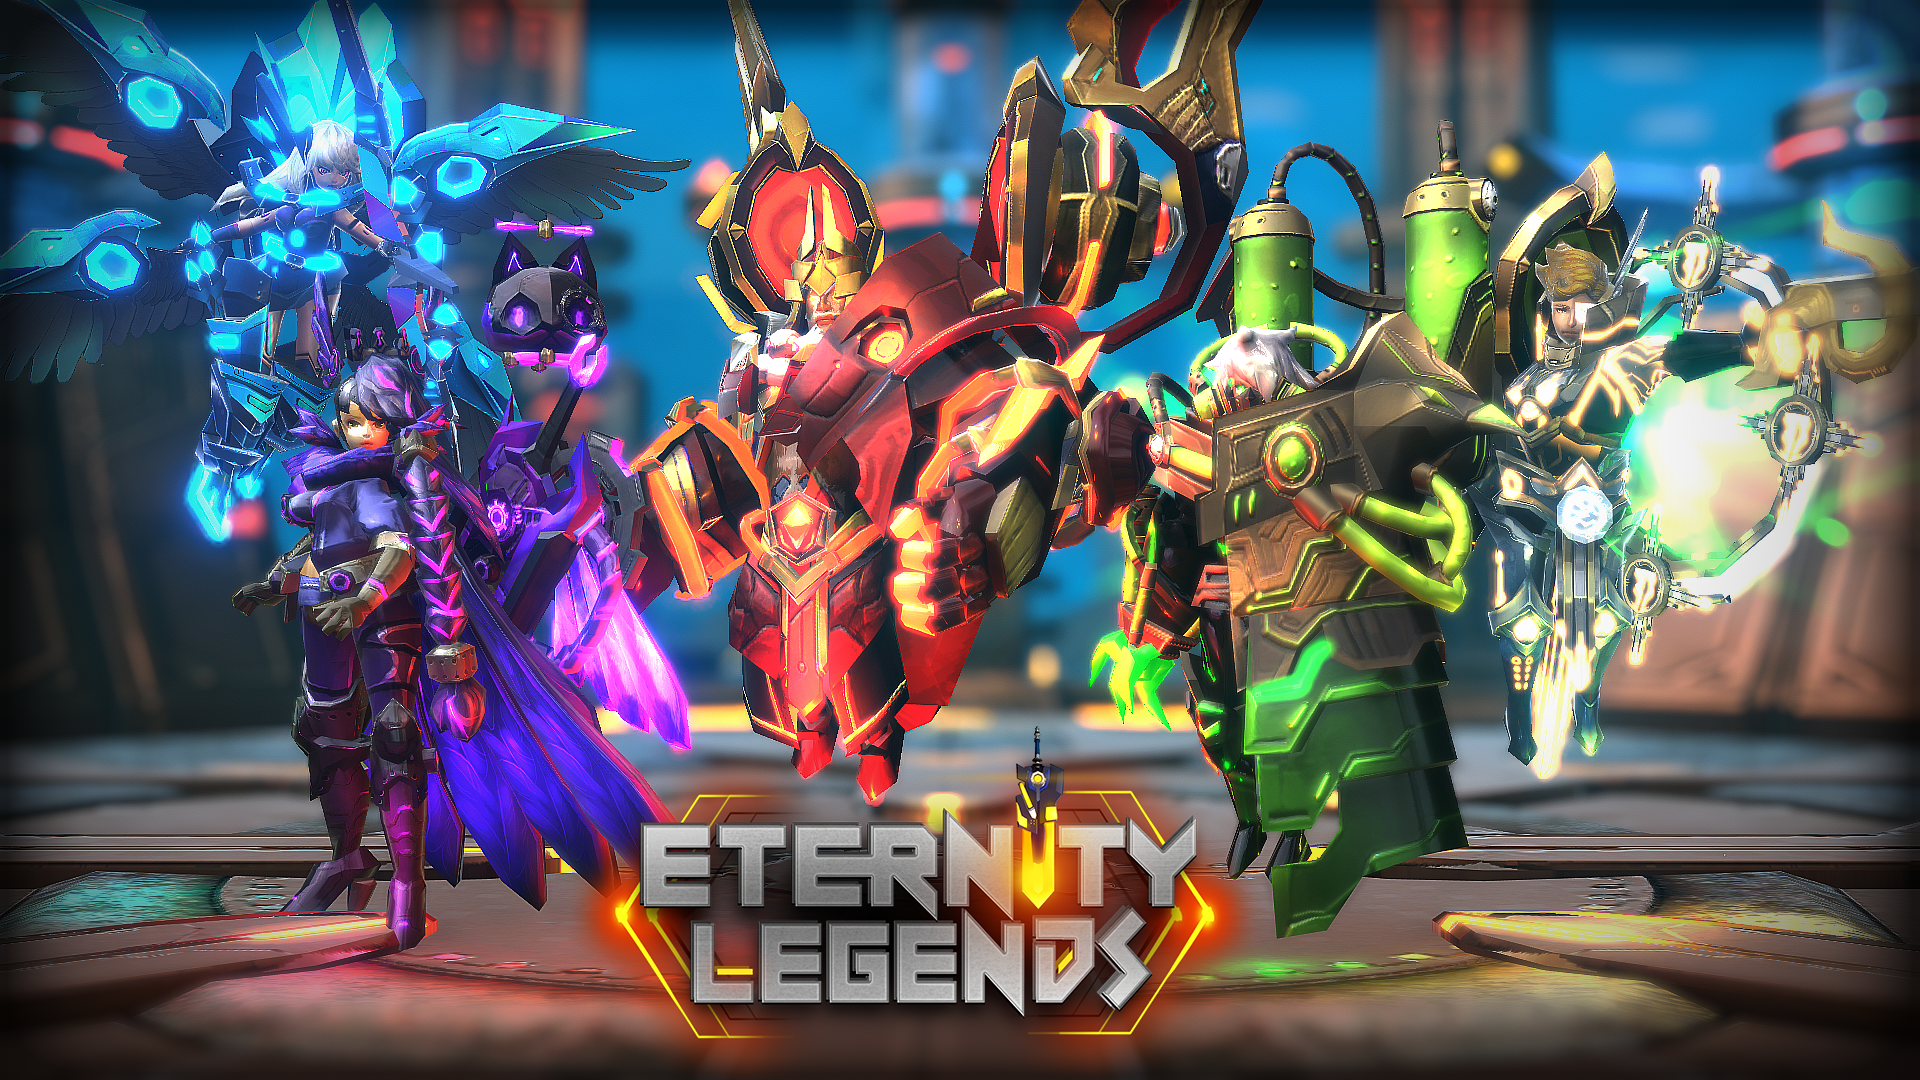 Screenshot 1 of Легенды вечности: Воины Династии Лиги Богов 